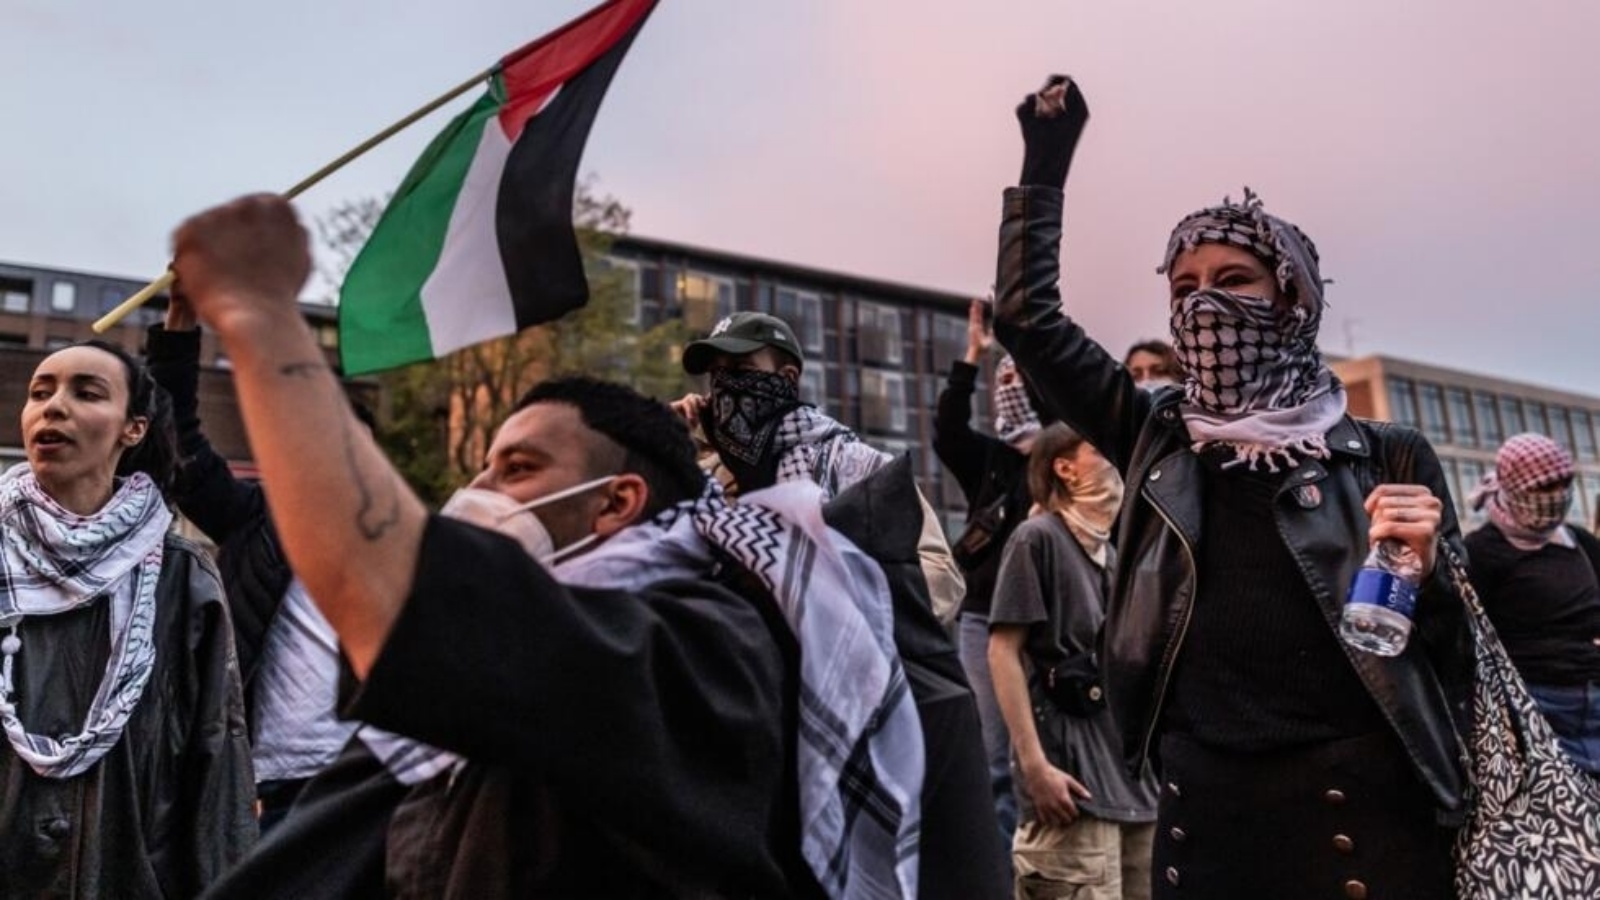 متظاهرون مؤيدون للفلسطينيين في حرم جامعة أمستردام في رويترسيلاند في أمستردام في 6 أيار (مايو) 2024. نصب الطلاب خياماً بالقرب من الحرم الجامعي للمطالبة بأن تقطع الجامعة علاقاتها مع إسرائيل 